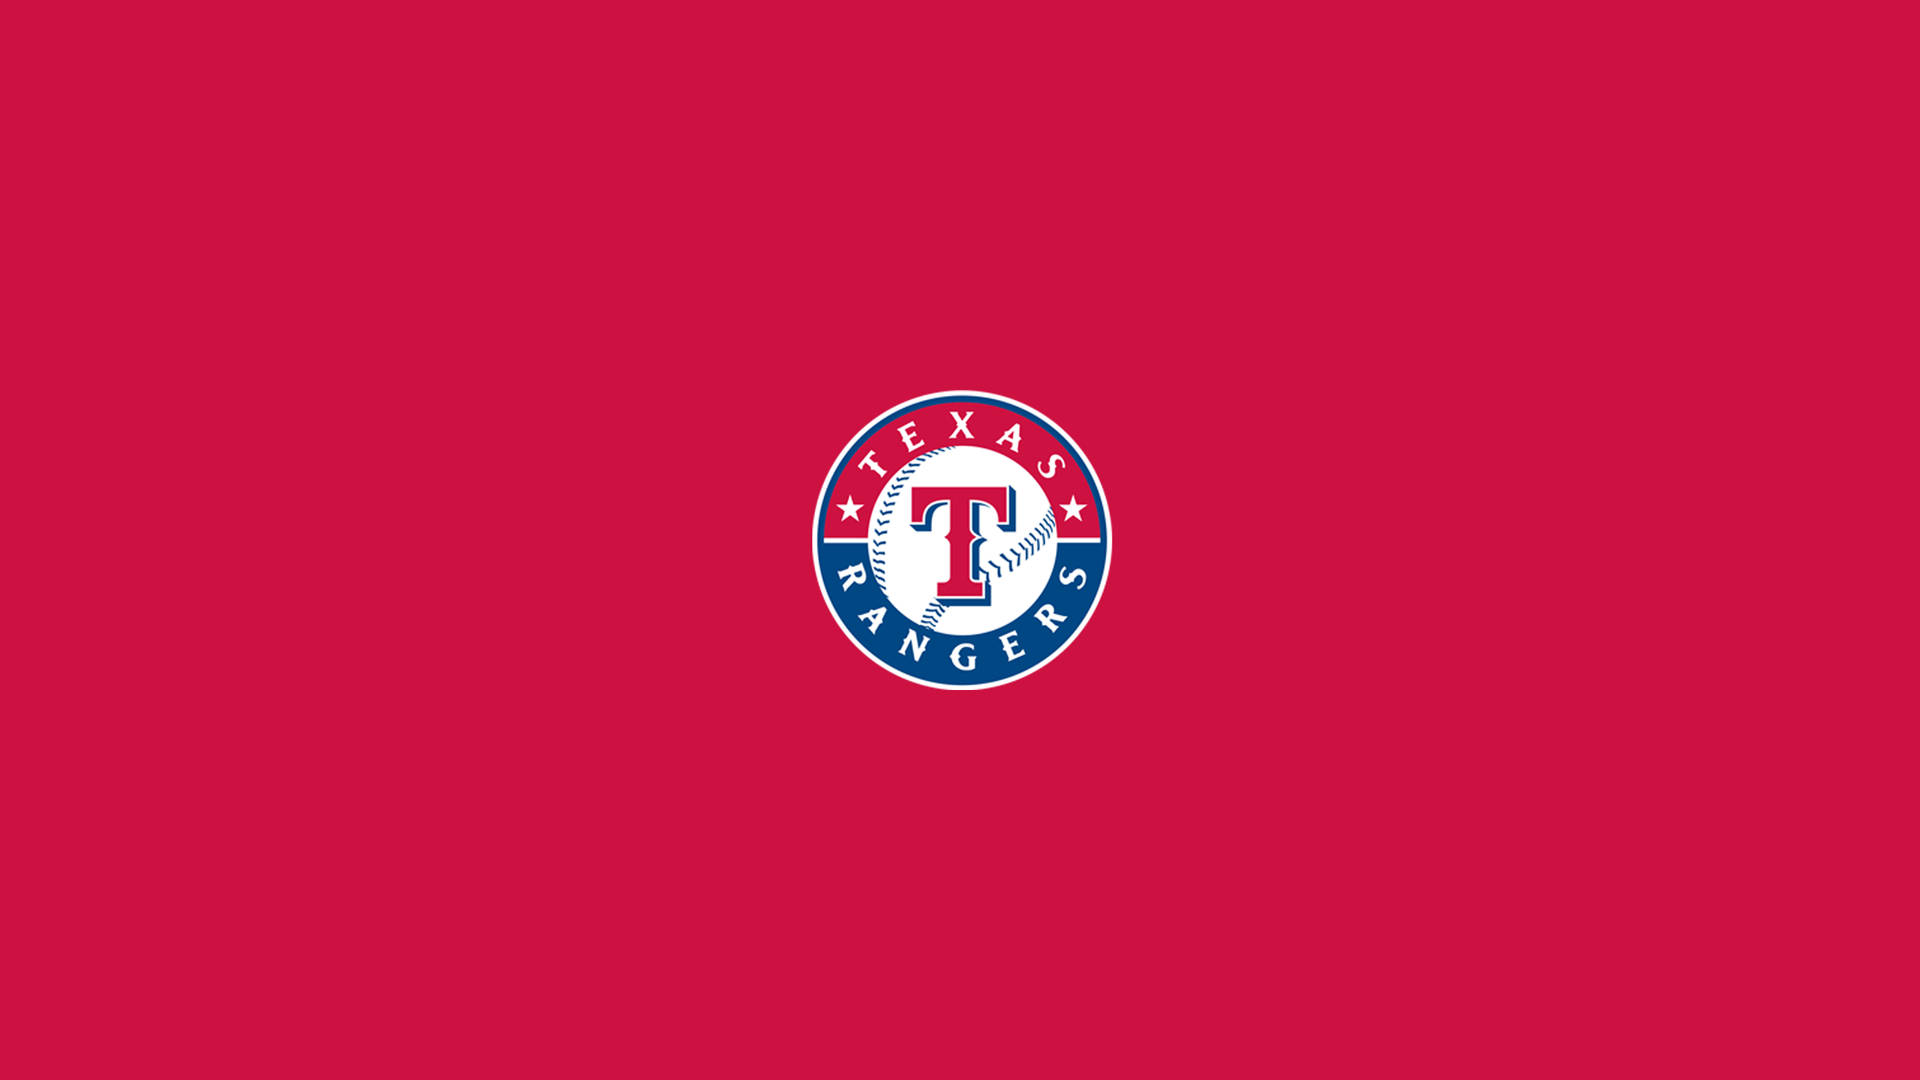 Fondods De Los Texas Rangers